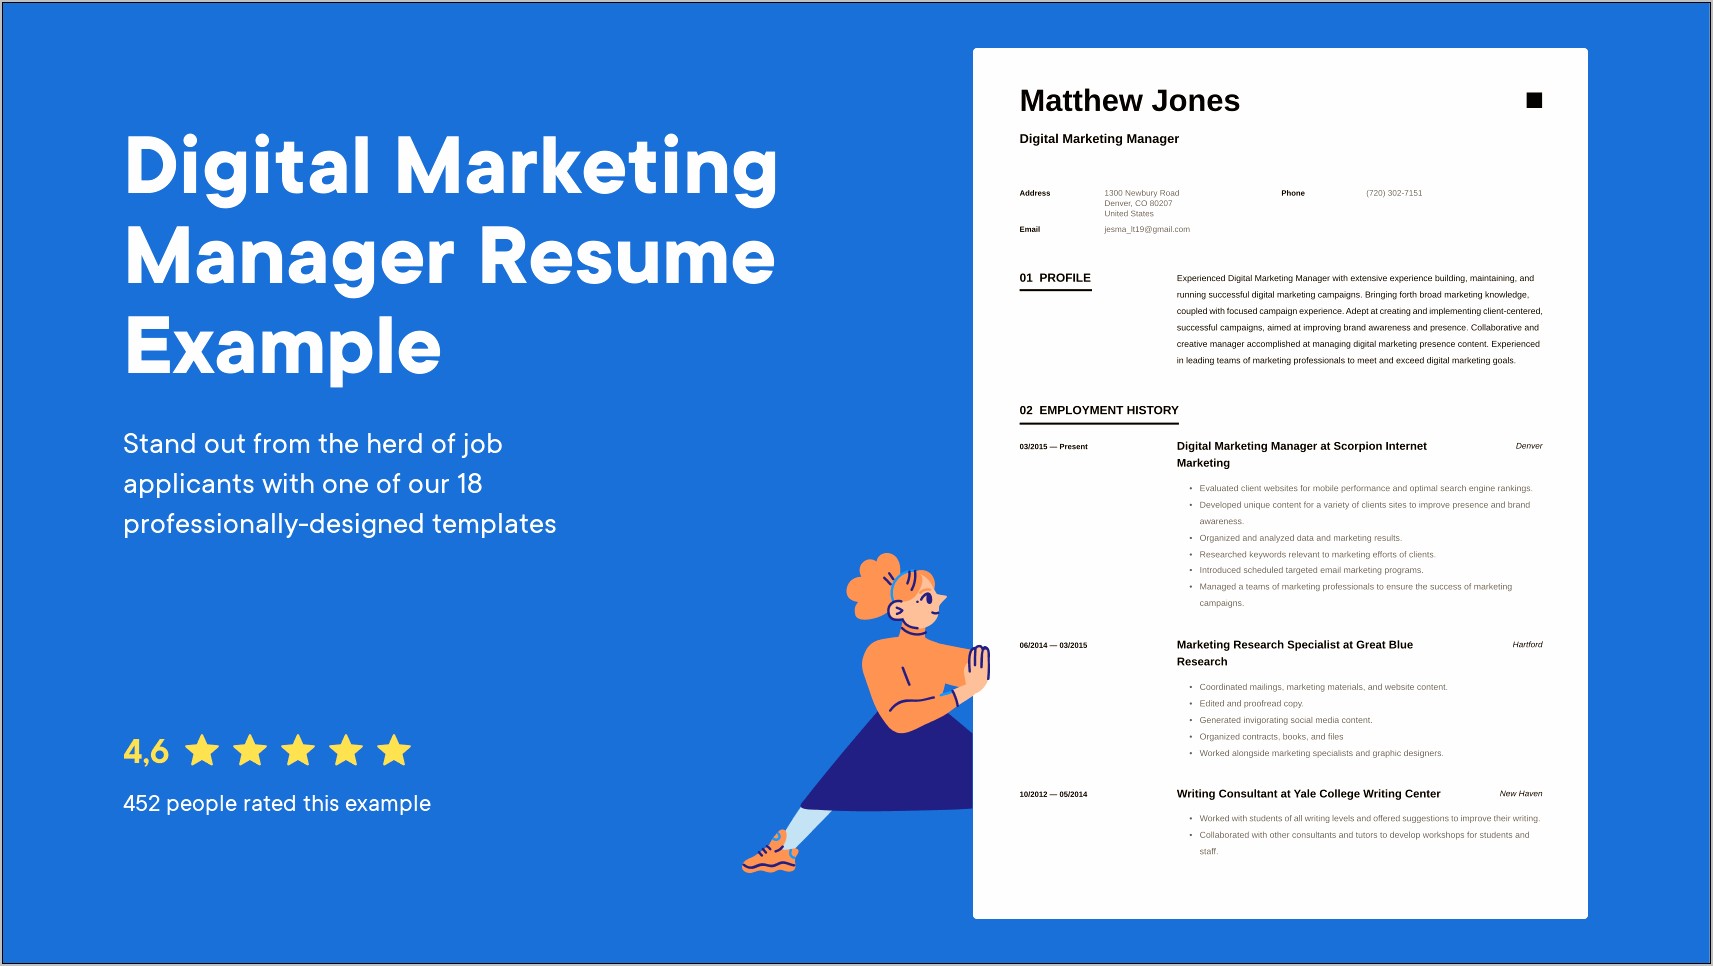 Best Resume Stats For Digital Marketing Manager